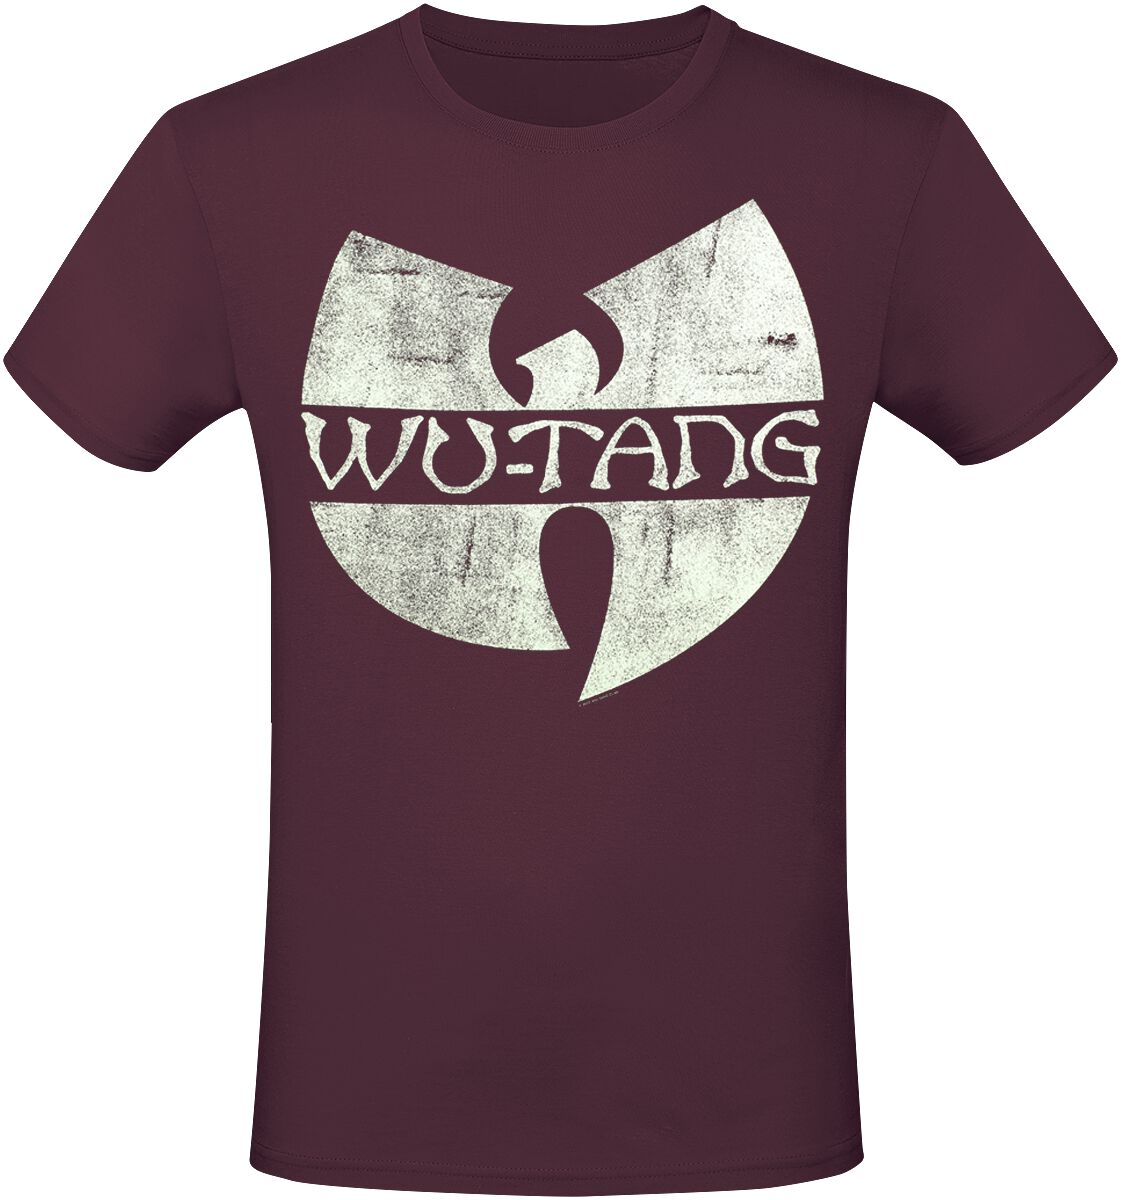 Wu-Tang Clan T-Shirt - Logo - S bis XXL - für Männer - Größe XXL - rot  - Lizenziertes Merchandise!